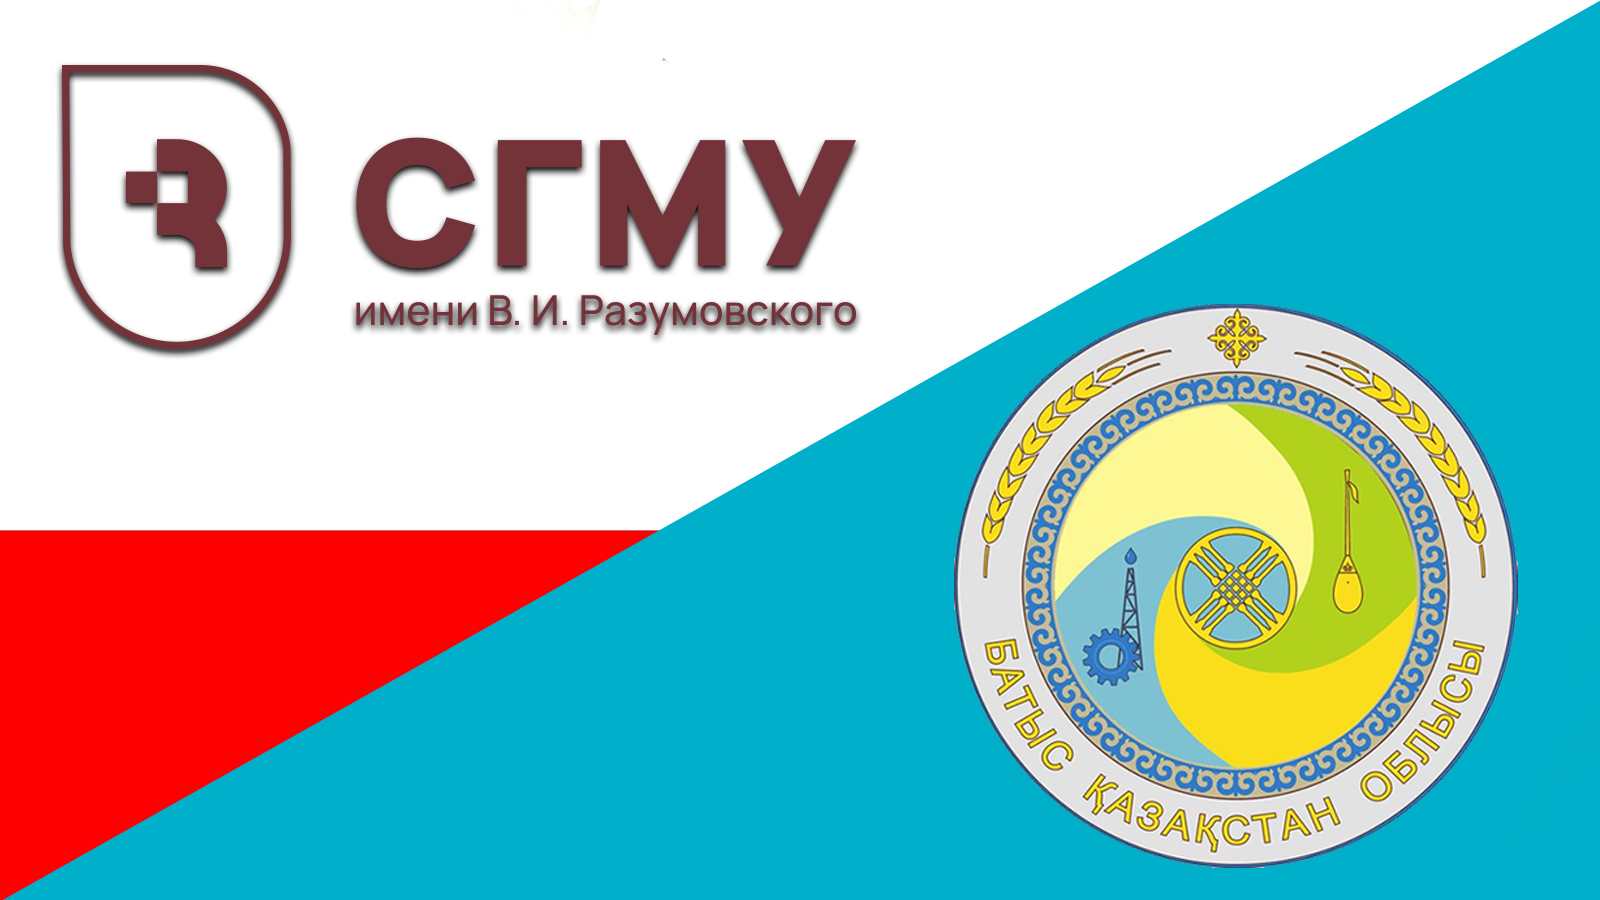 Саратовский медуниверситет увеличивает прием обучающихся из Республики Казахстан